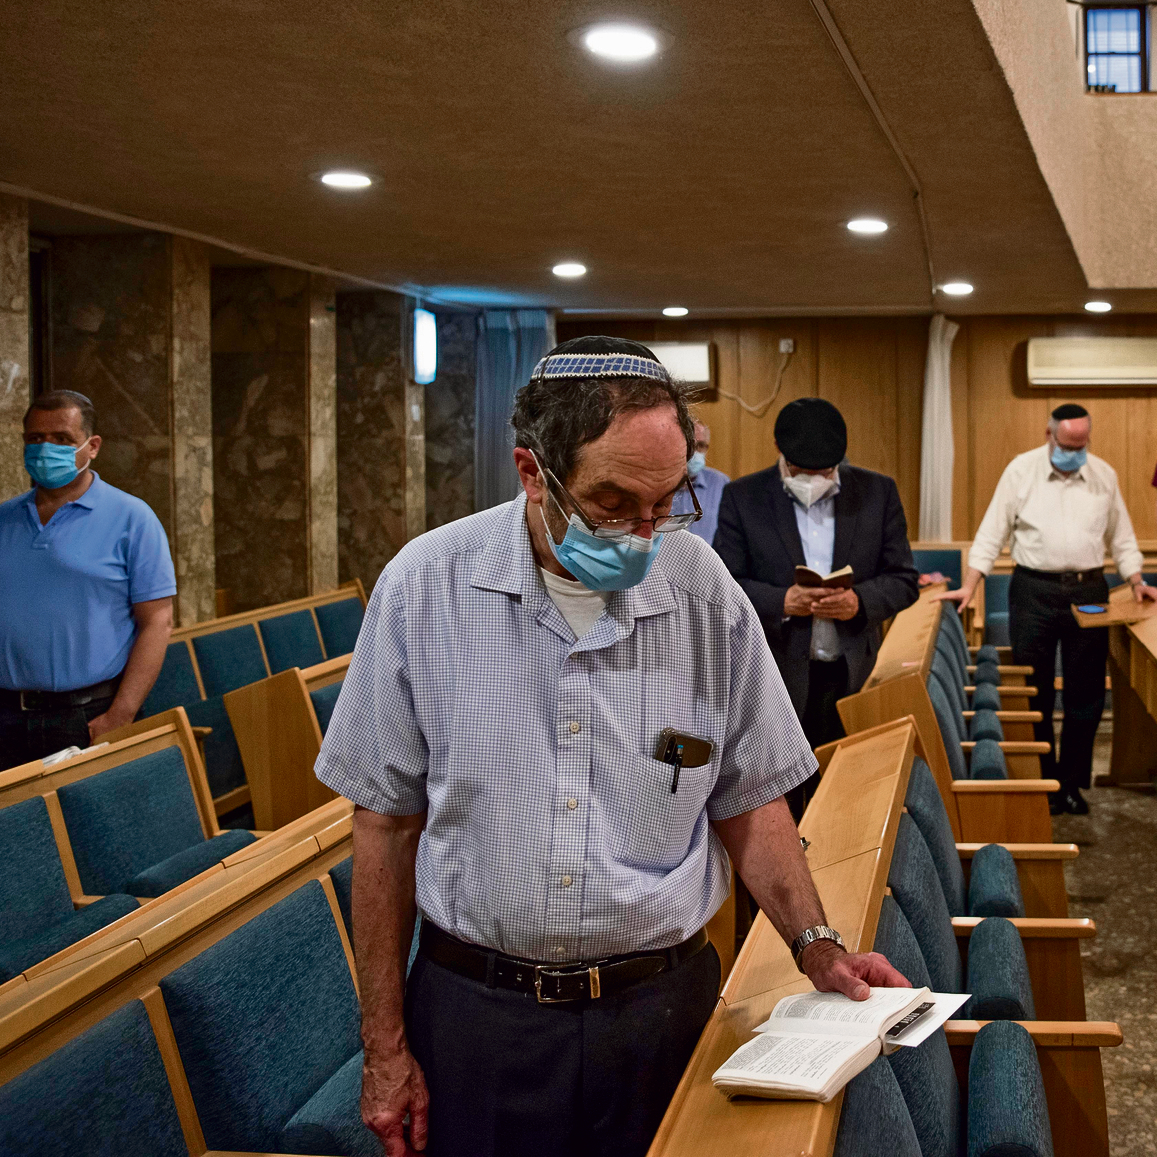 אנטישמיות חבויה? תפילות בבית הכנסת | צילום: שלו שלום